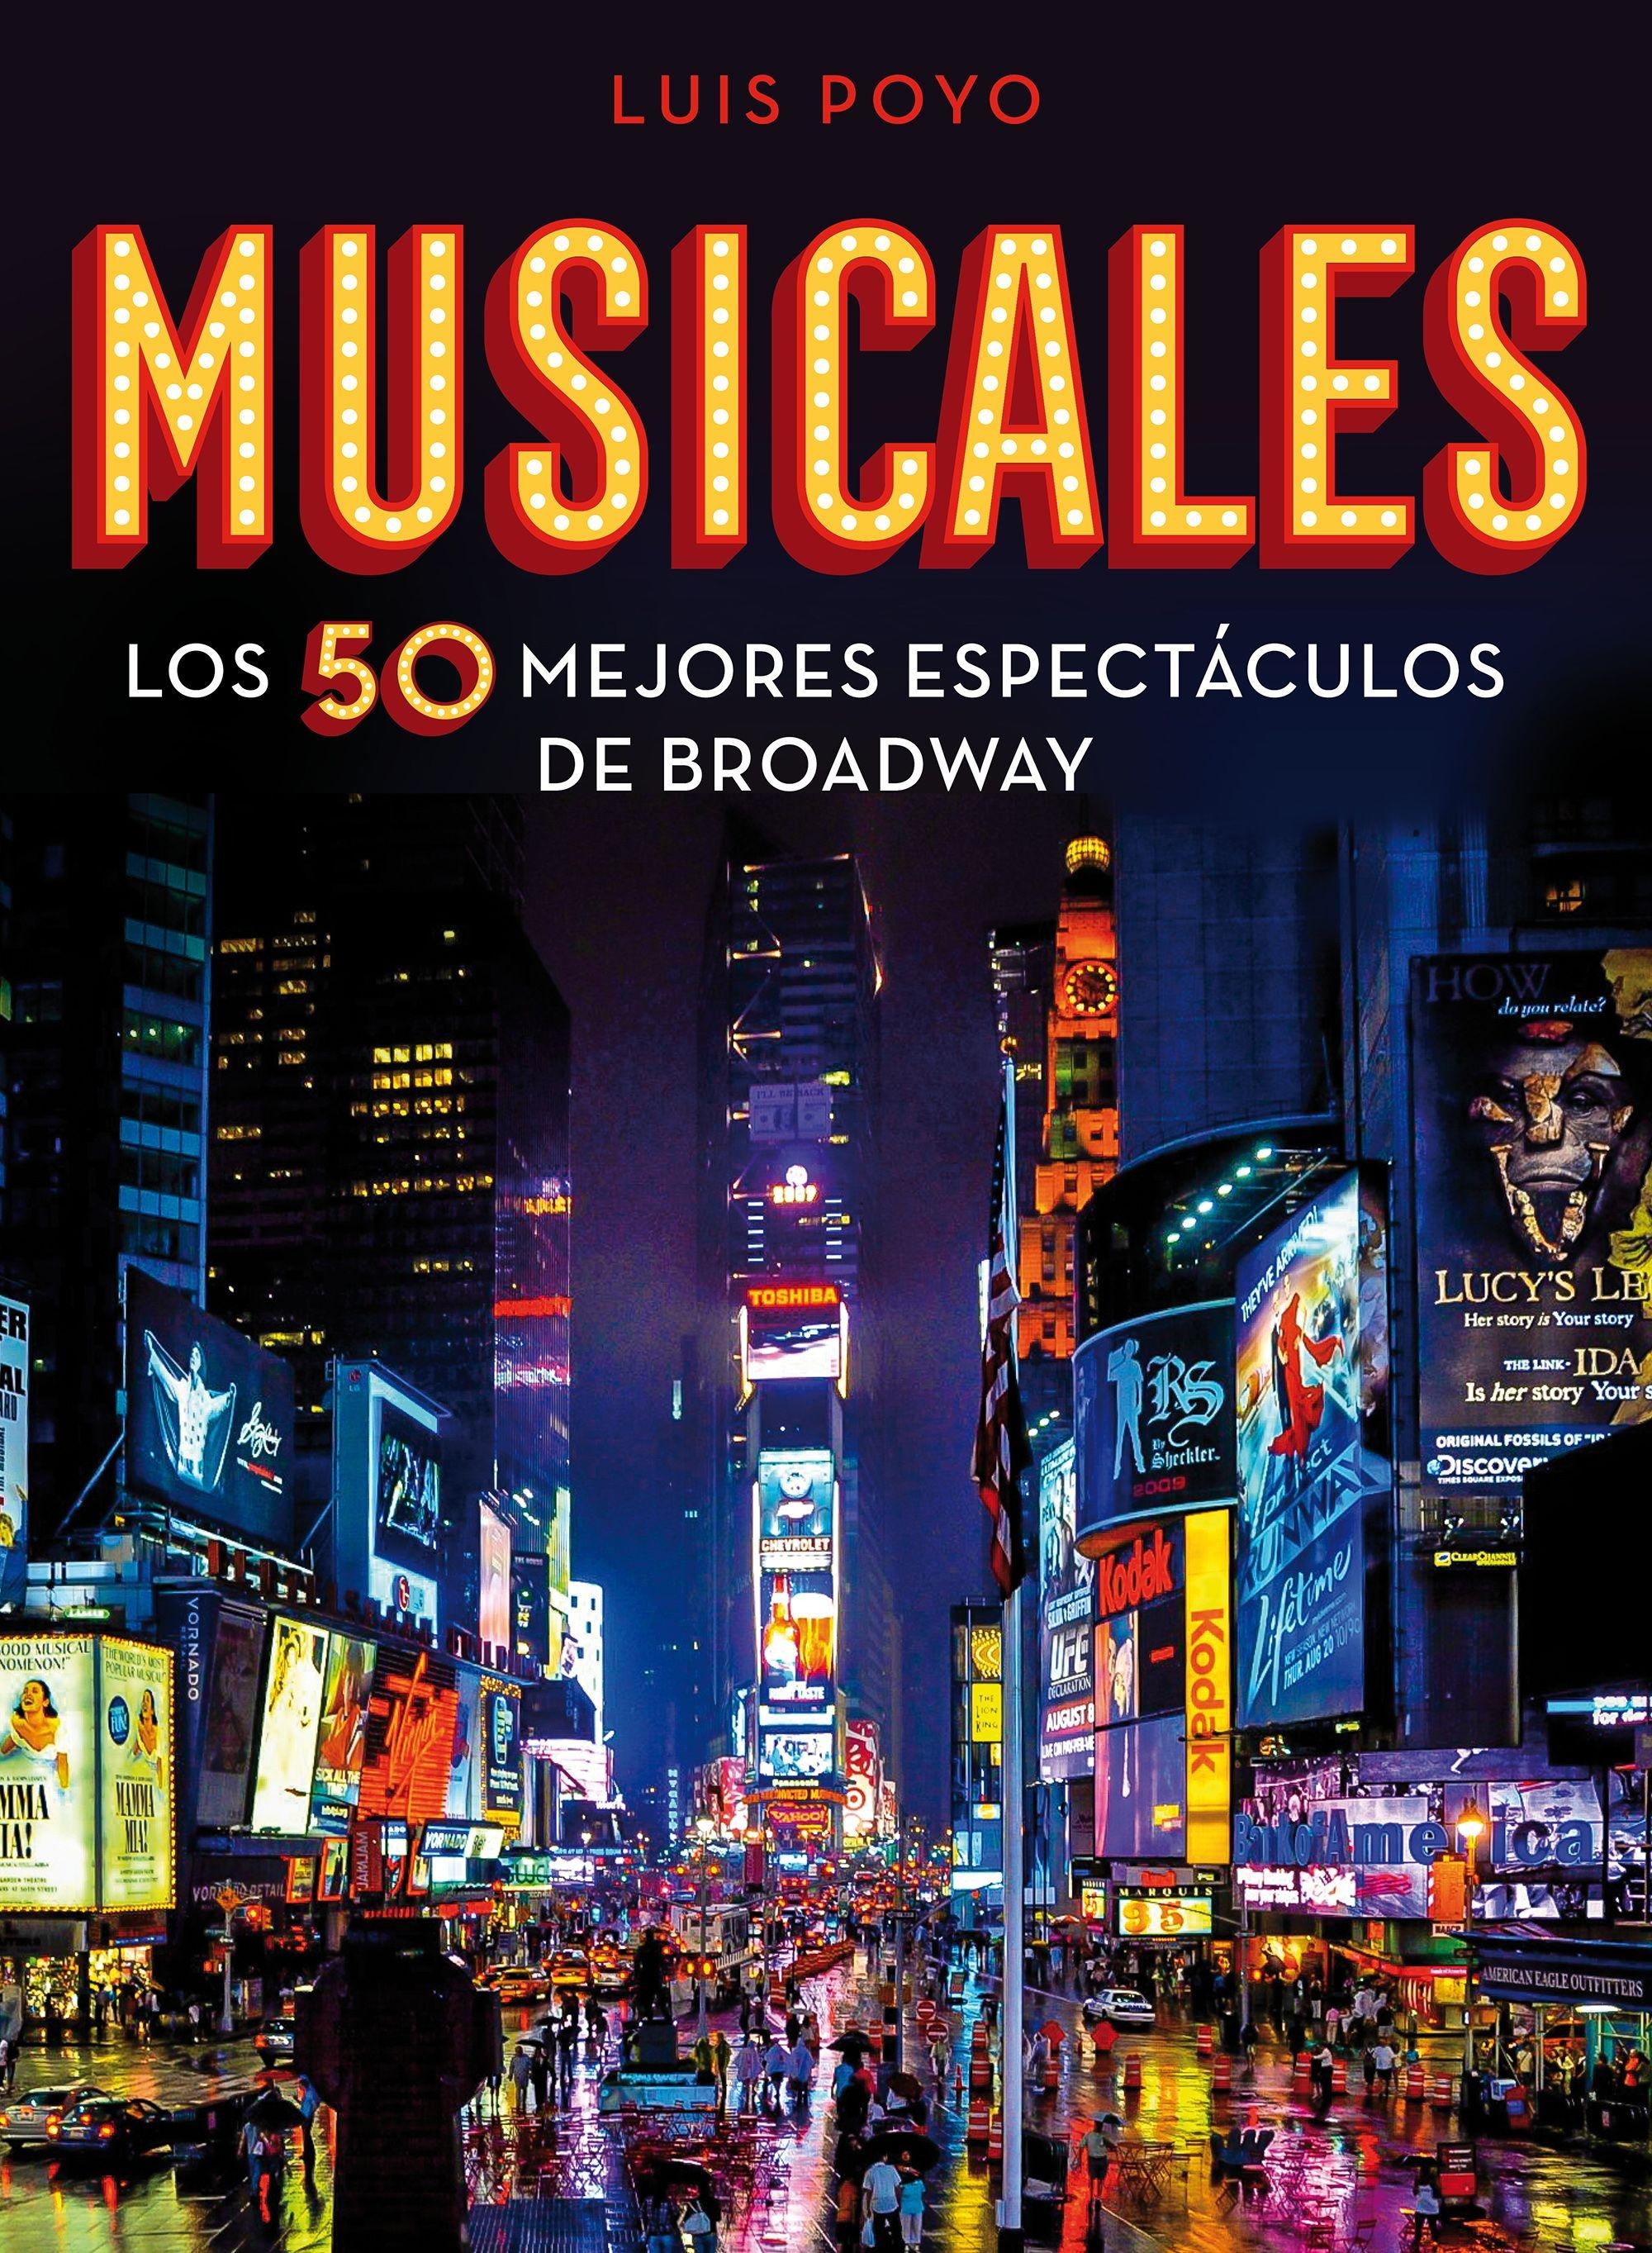 Musicales "Los 50 mejores espectáculos de Broadway"